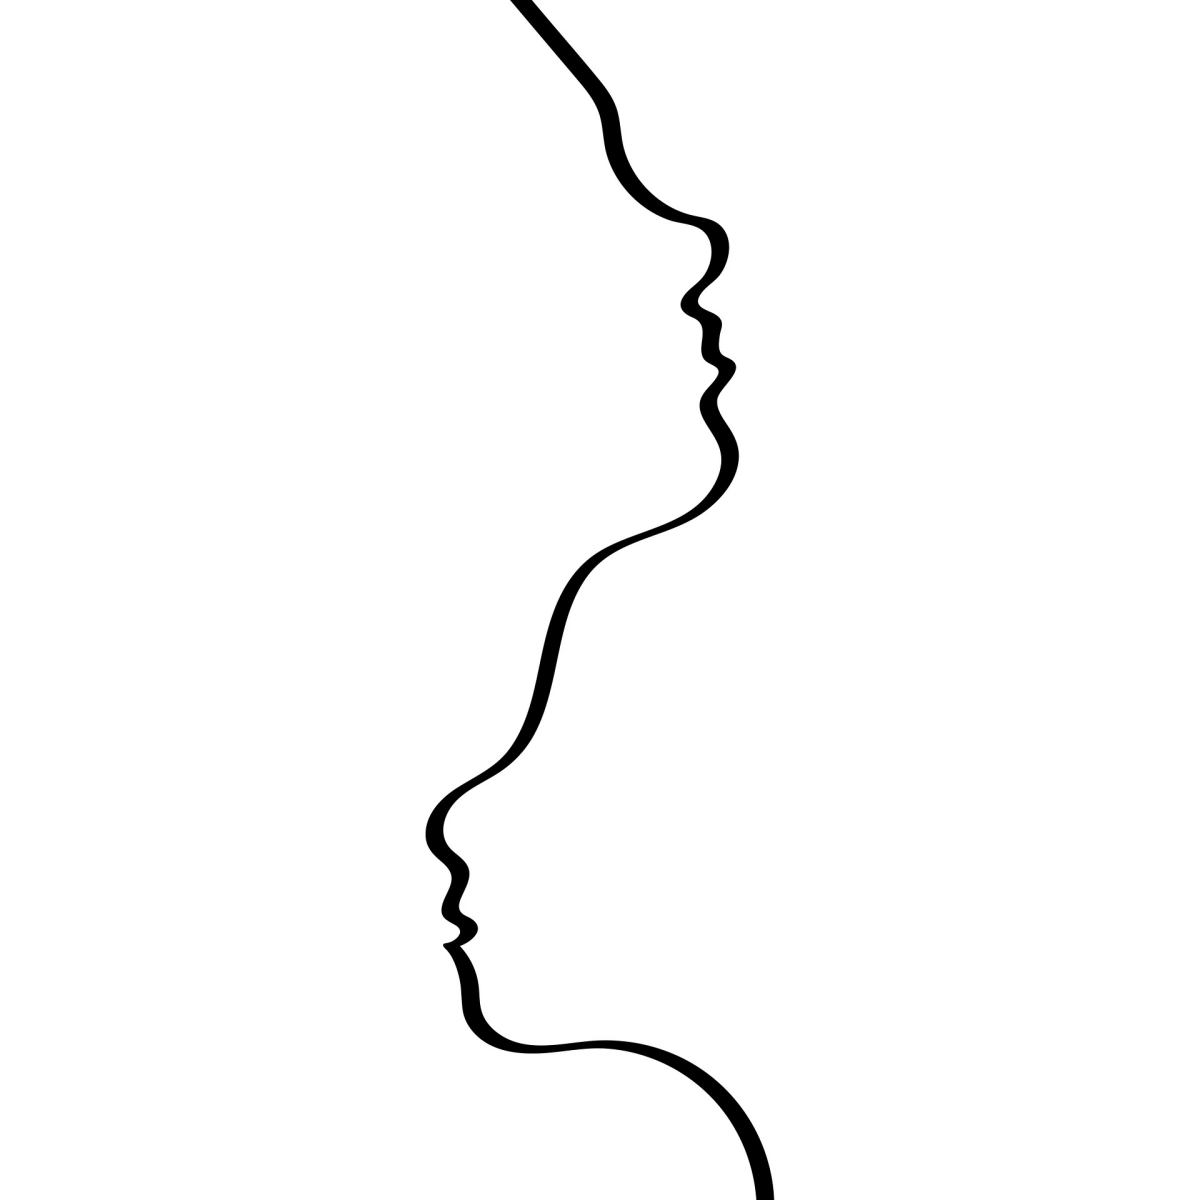 dessin minimaliste visage contours lignes couple amour art aesthetic